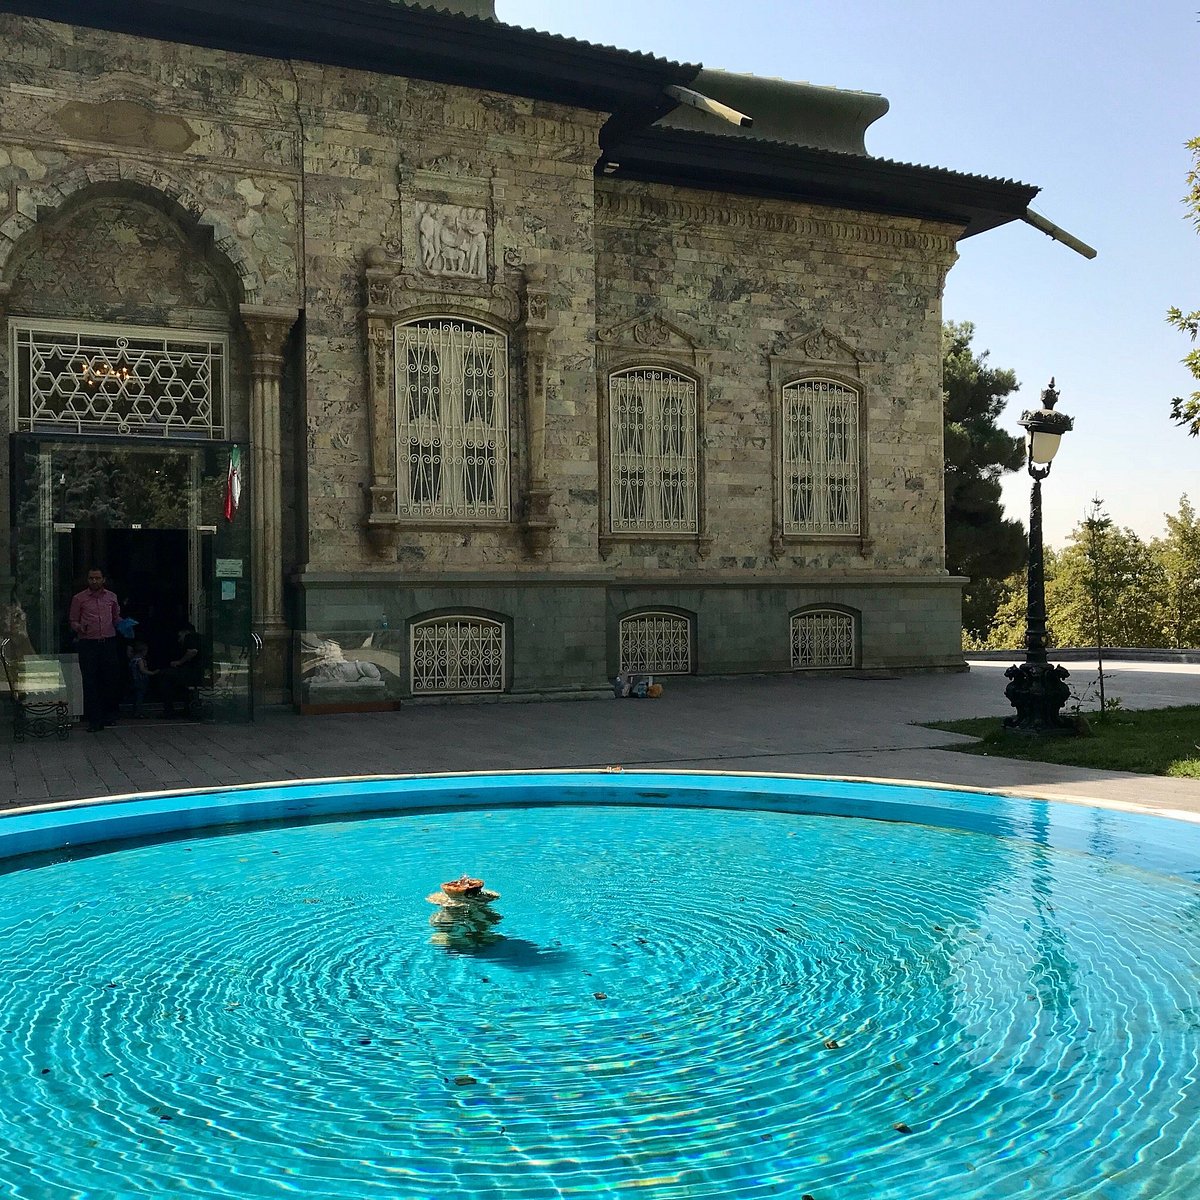 Sadabaad Palace, Tehran